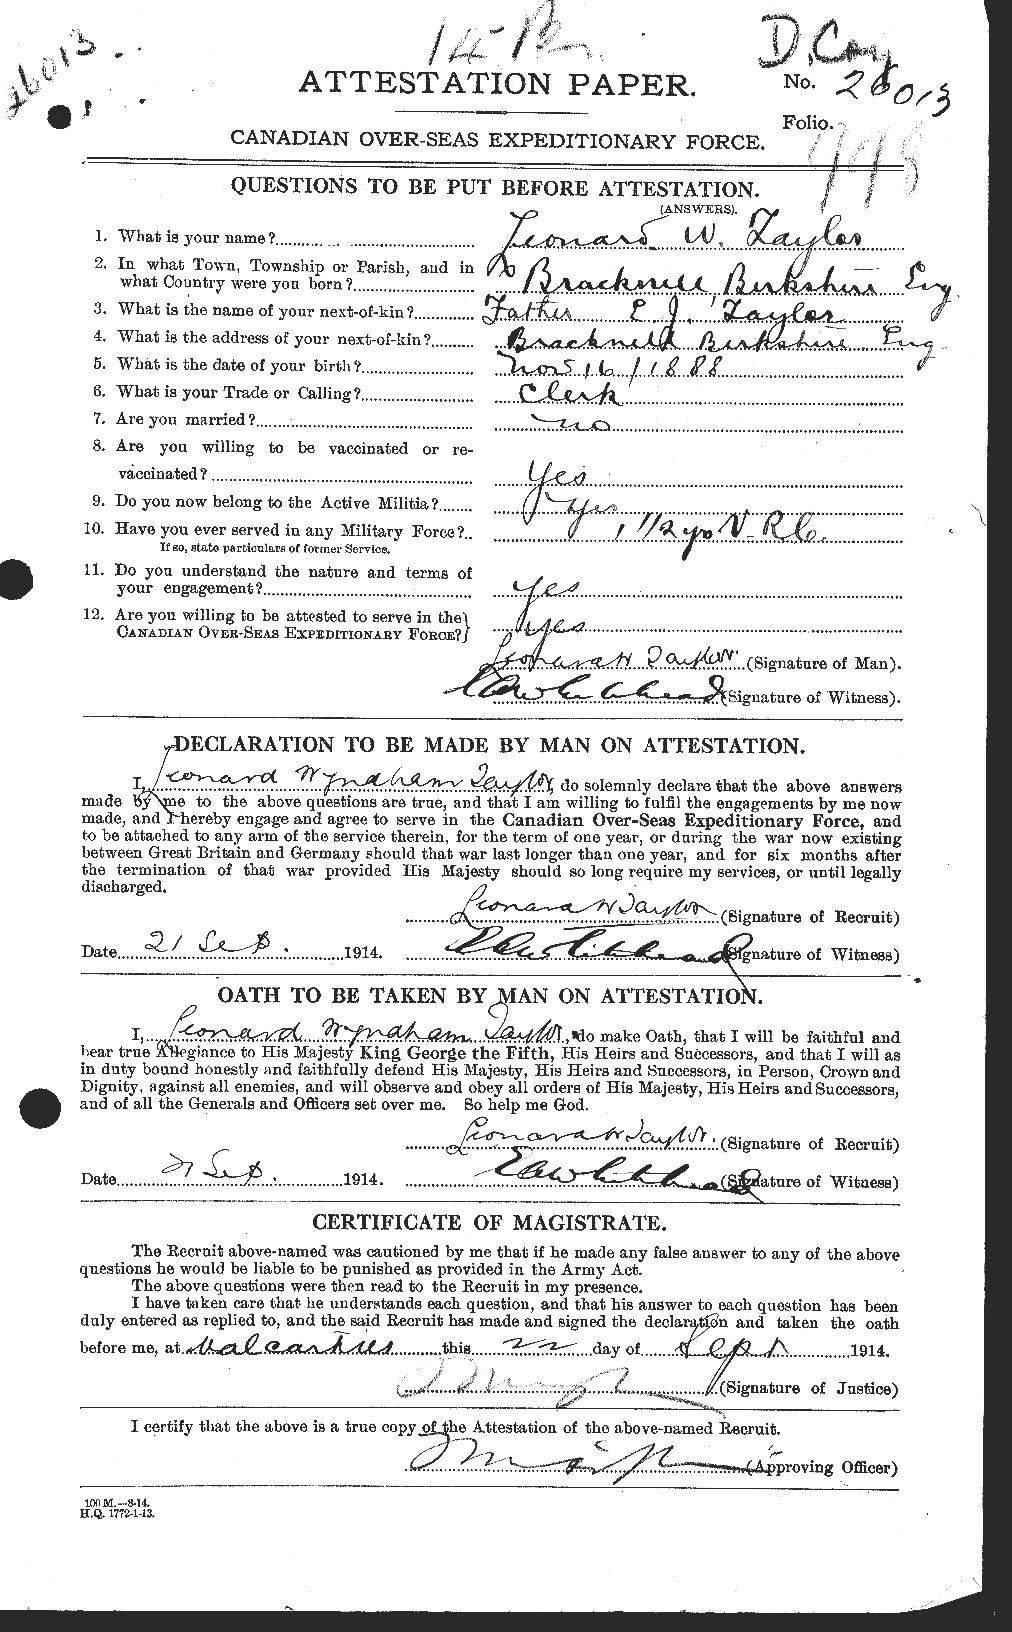 Dossiers du Personnel de la Première Guerre mondiale - CEC 627632a